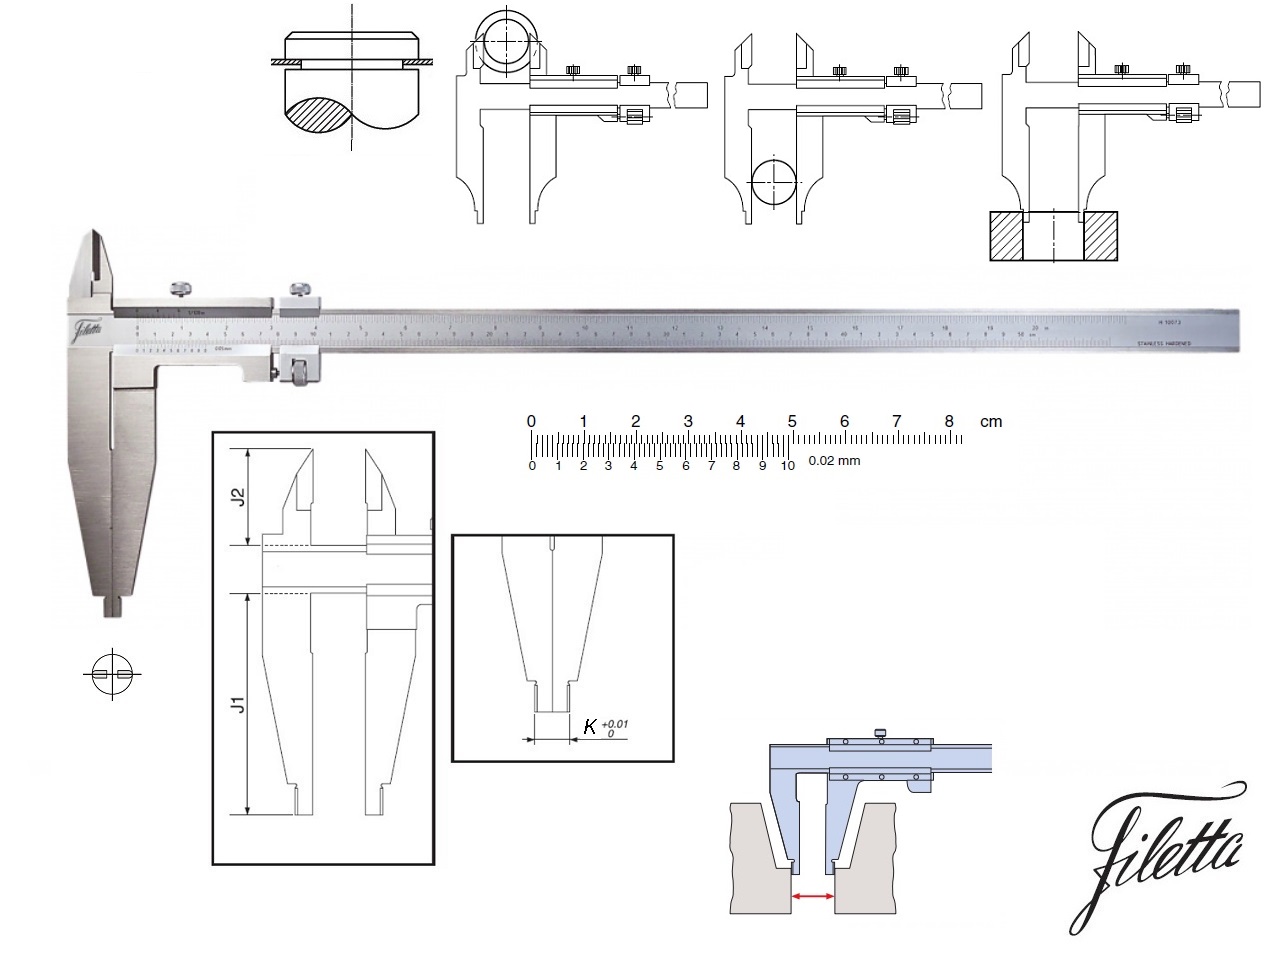 Posuvné měřítko Filetta 0-500 mm, čelisti 150 mm, s měřicími nožíky pro vnější měření